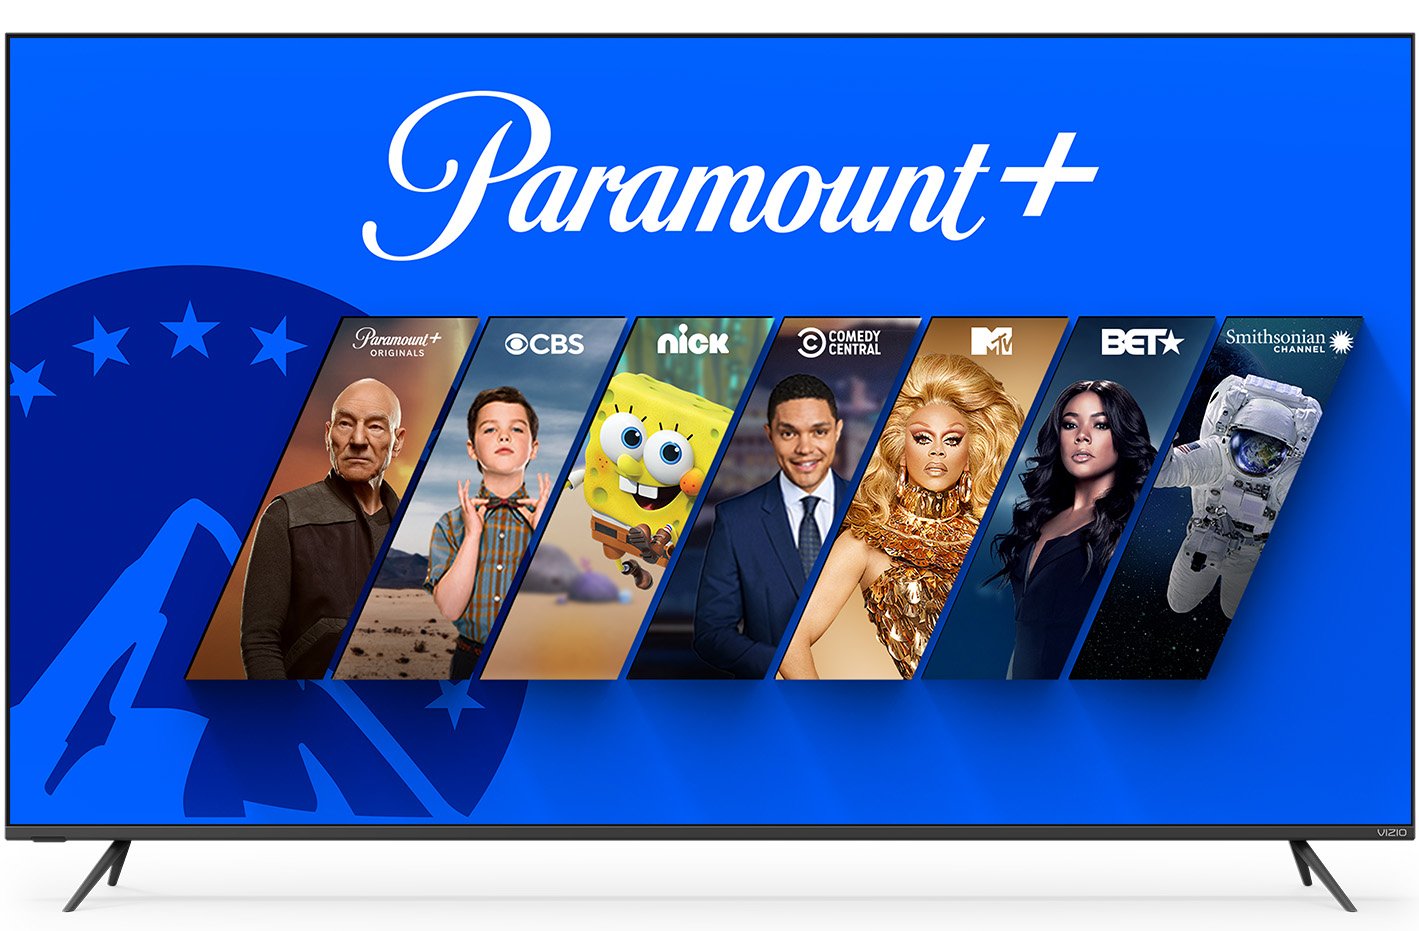 T-Mobile Paramount Plus